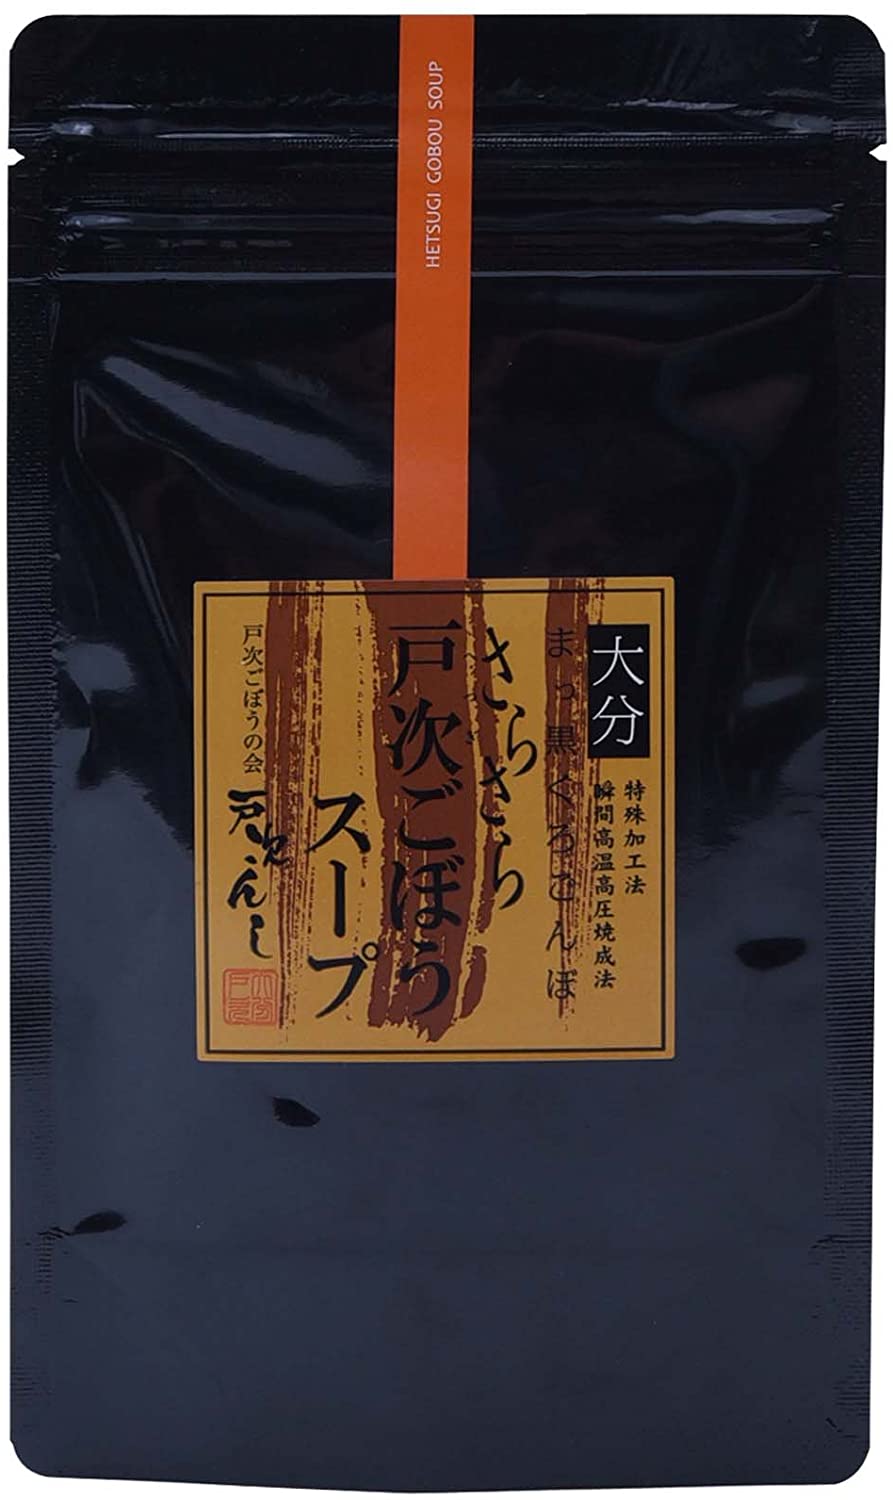 Концентрированный экстракт из лопуха и грибов шиитаке Tojijin Sarasara Toji Burdock Soup Totsuginshi, 70 гр